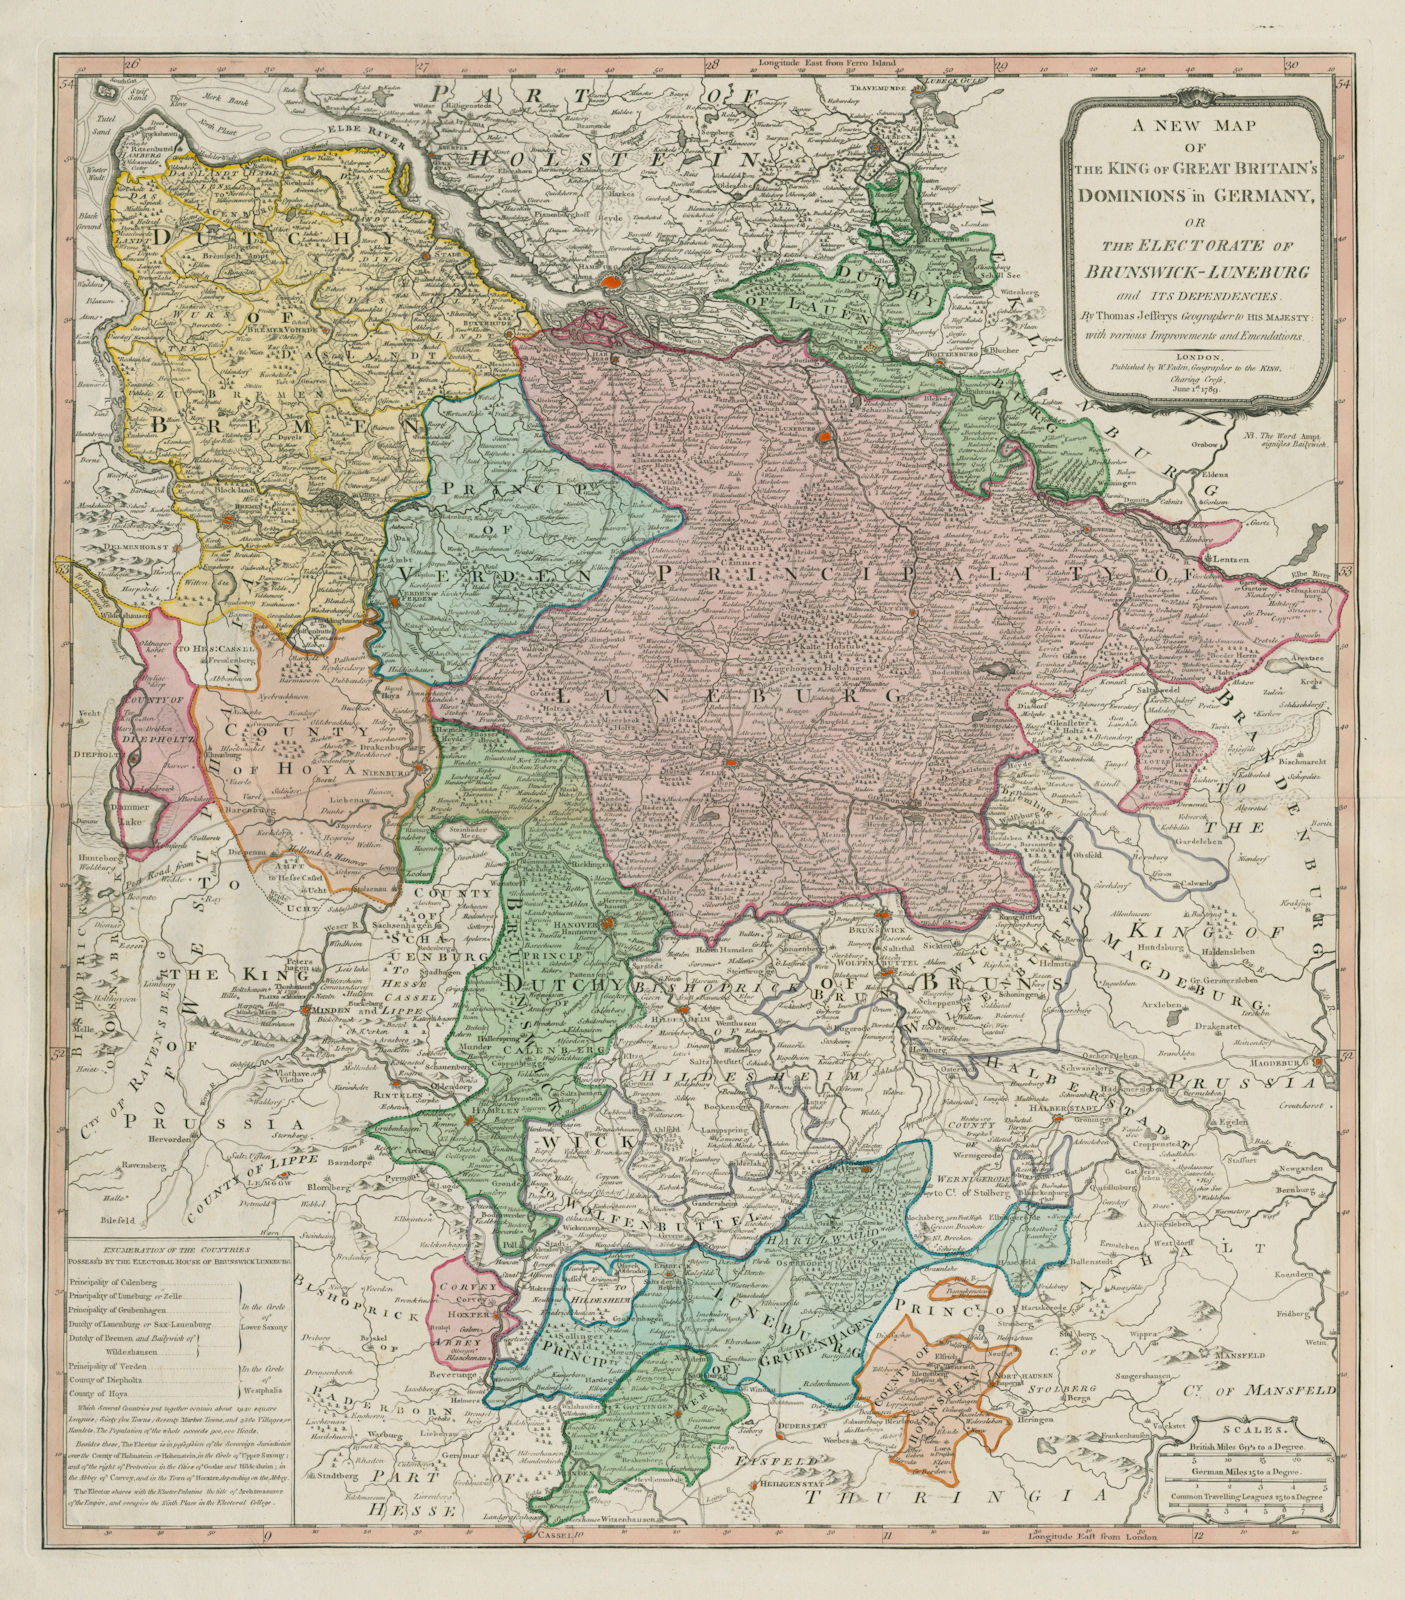 Associate Product King of Great Britain's dominions in Germany. Brunswick. JEFFERYS/FADEN 1789 map